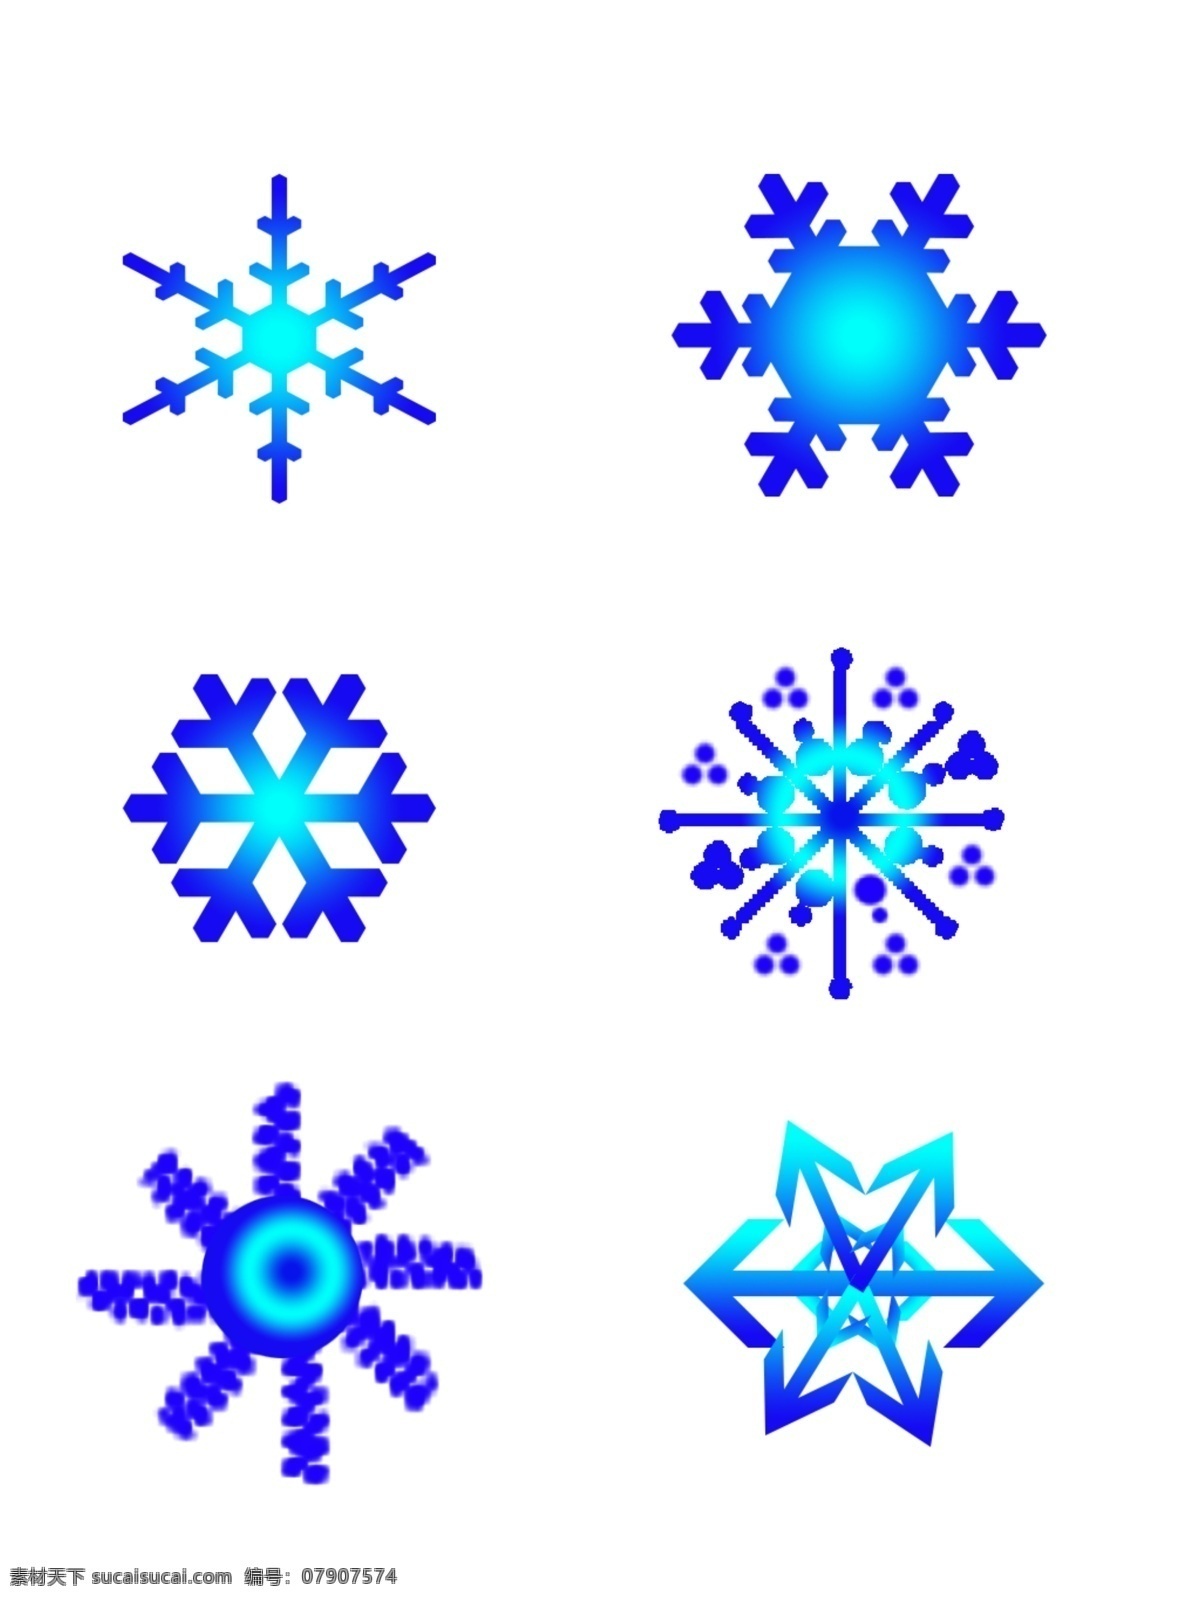 蓝色 渐变 雪花 漂浮 装饰 商用 雪花图片 雪花形状 简约 冬天 免抠 蓝色渐变雪花 雪花卡通形象 可商用 下雪元素 可分开使用